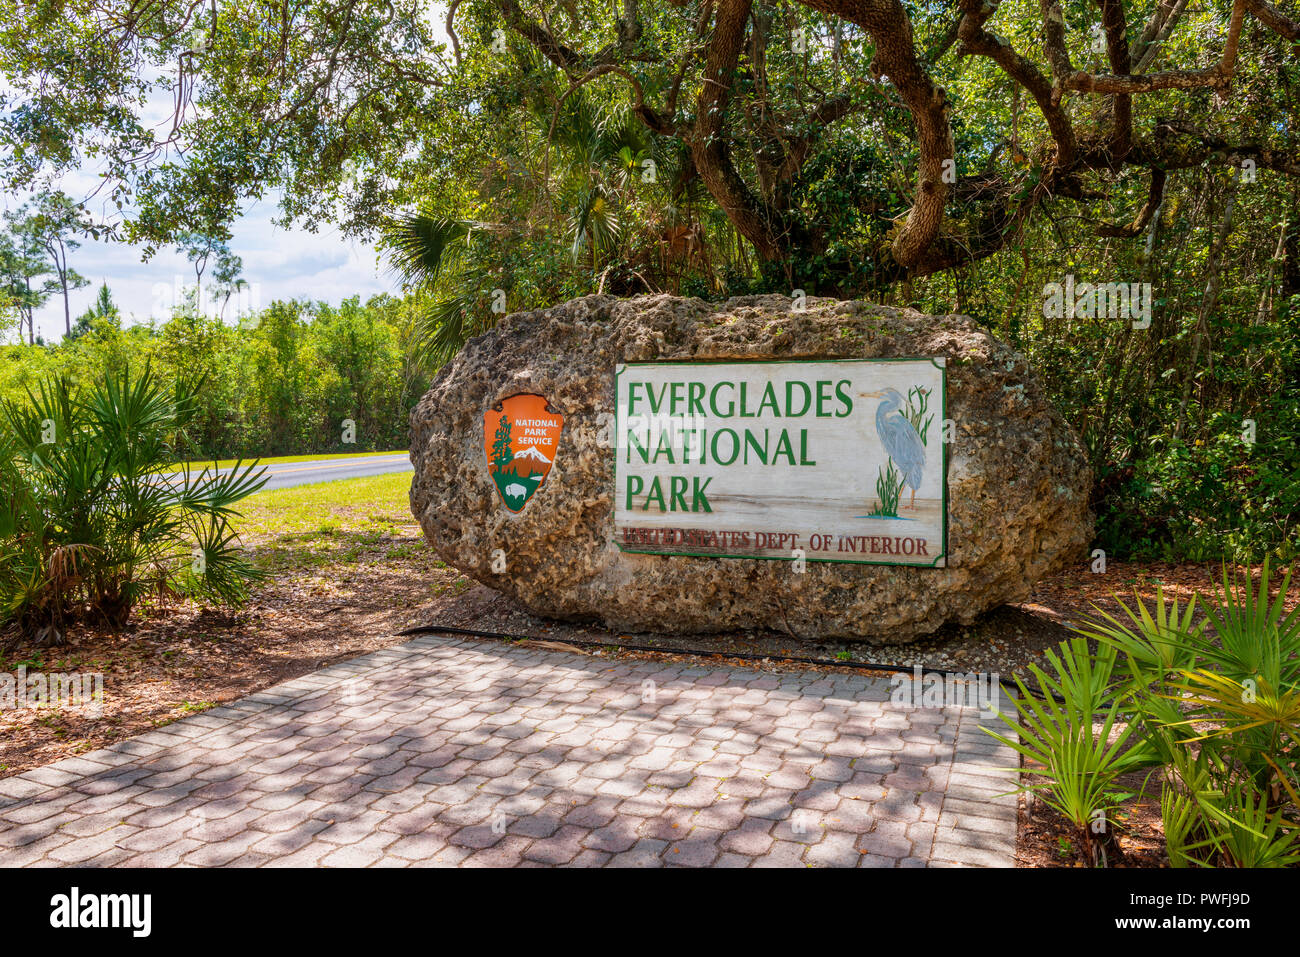 Segno di entrata al parco nazionale delle Everglades della Florida, Stati Uniti d'America. Everglades è una regione naturale delle zone umide tropicali. Foto Stock